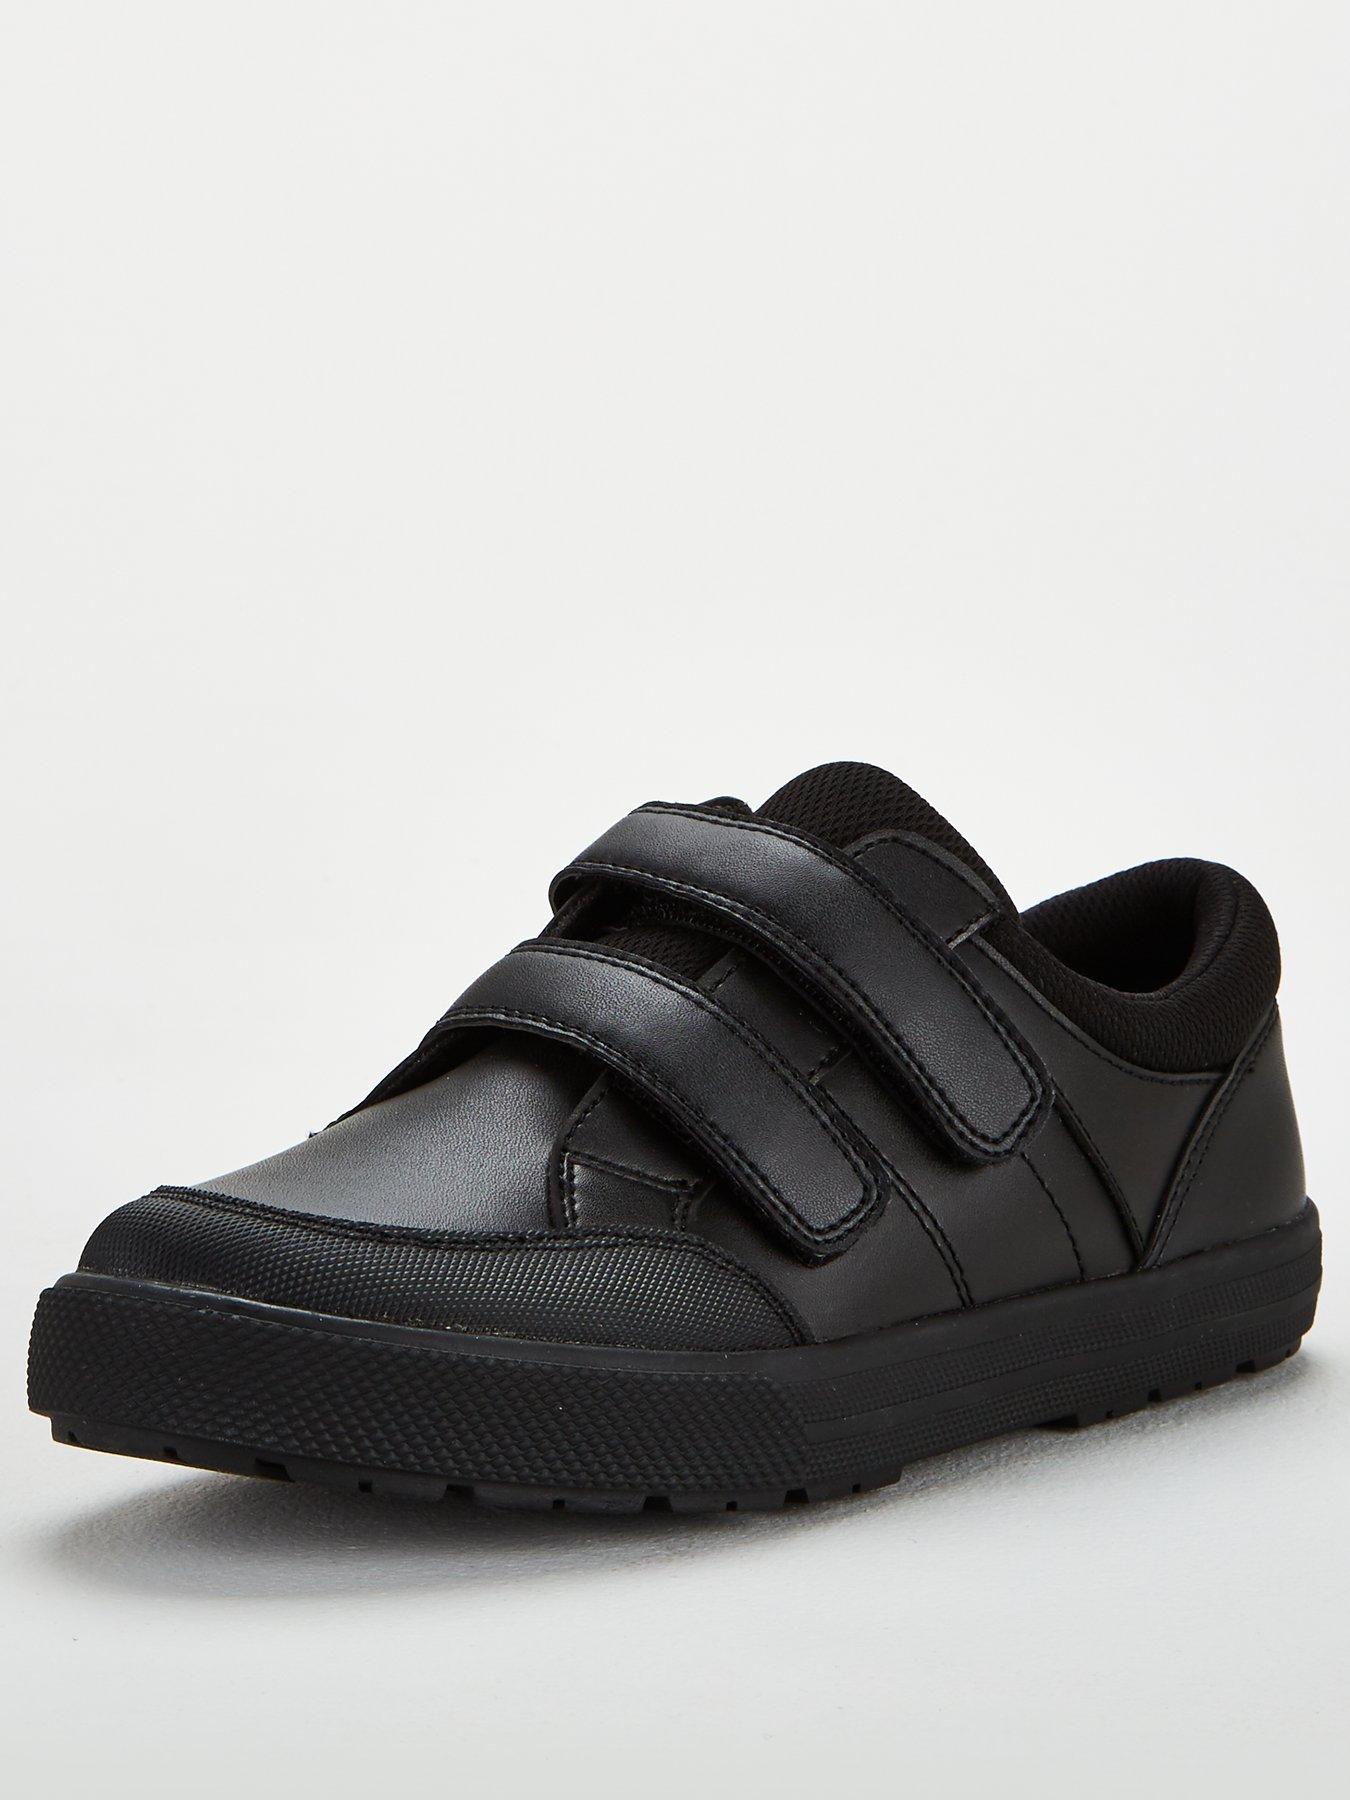 Kids Boys Twin Strap Leather School Shoe - Black